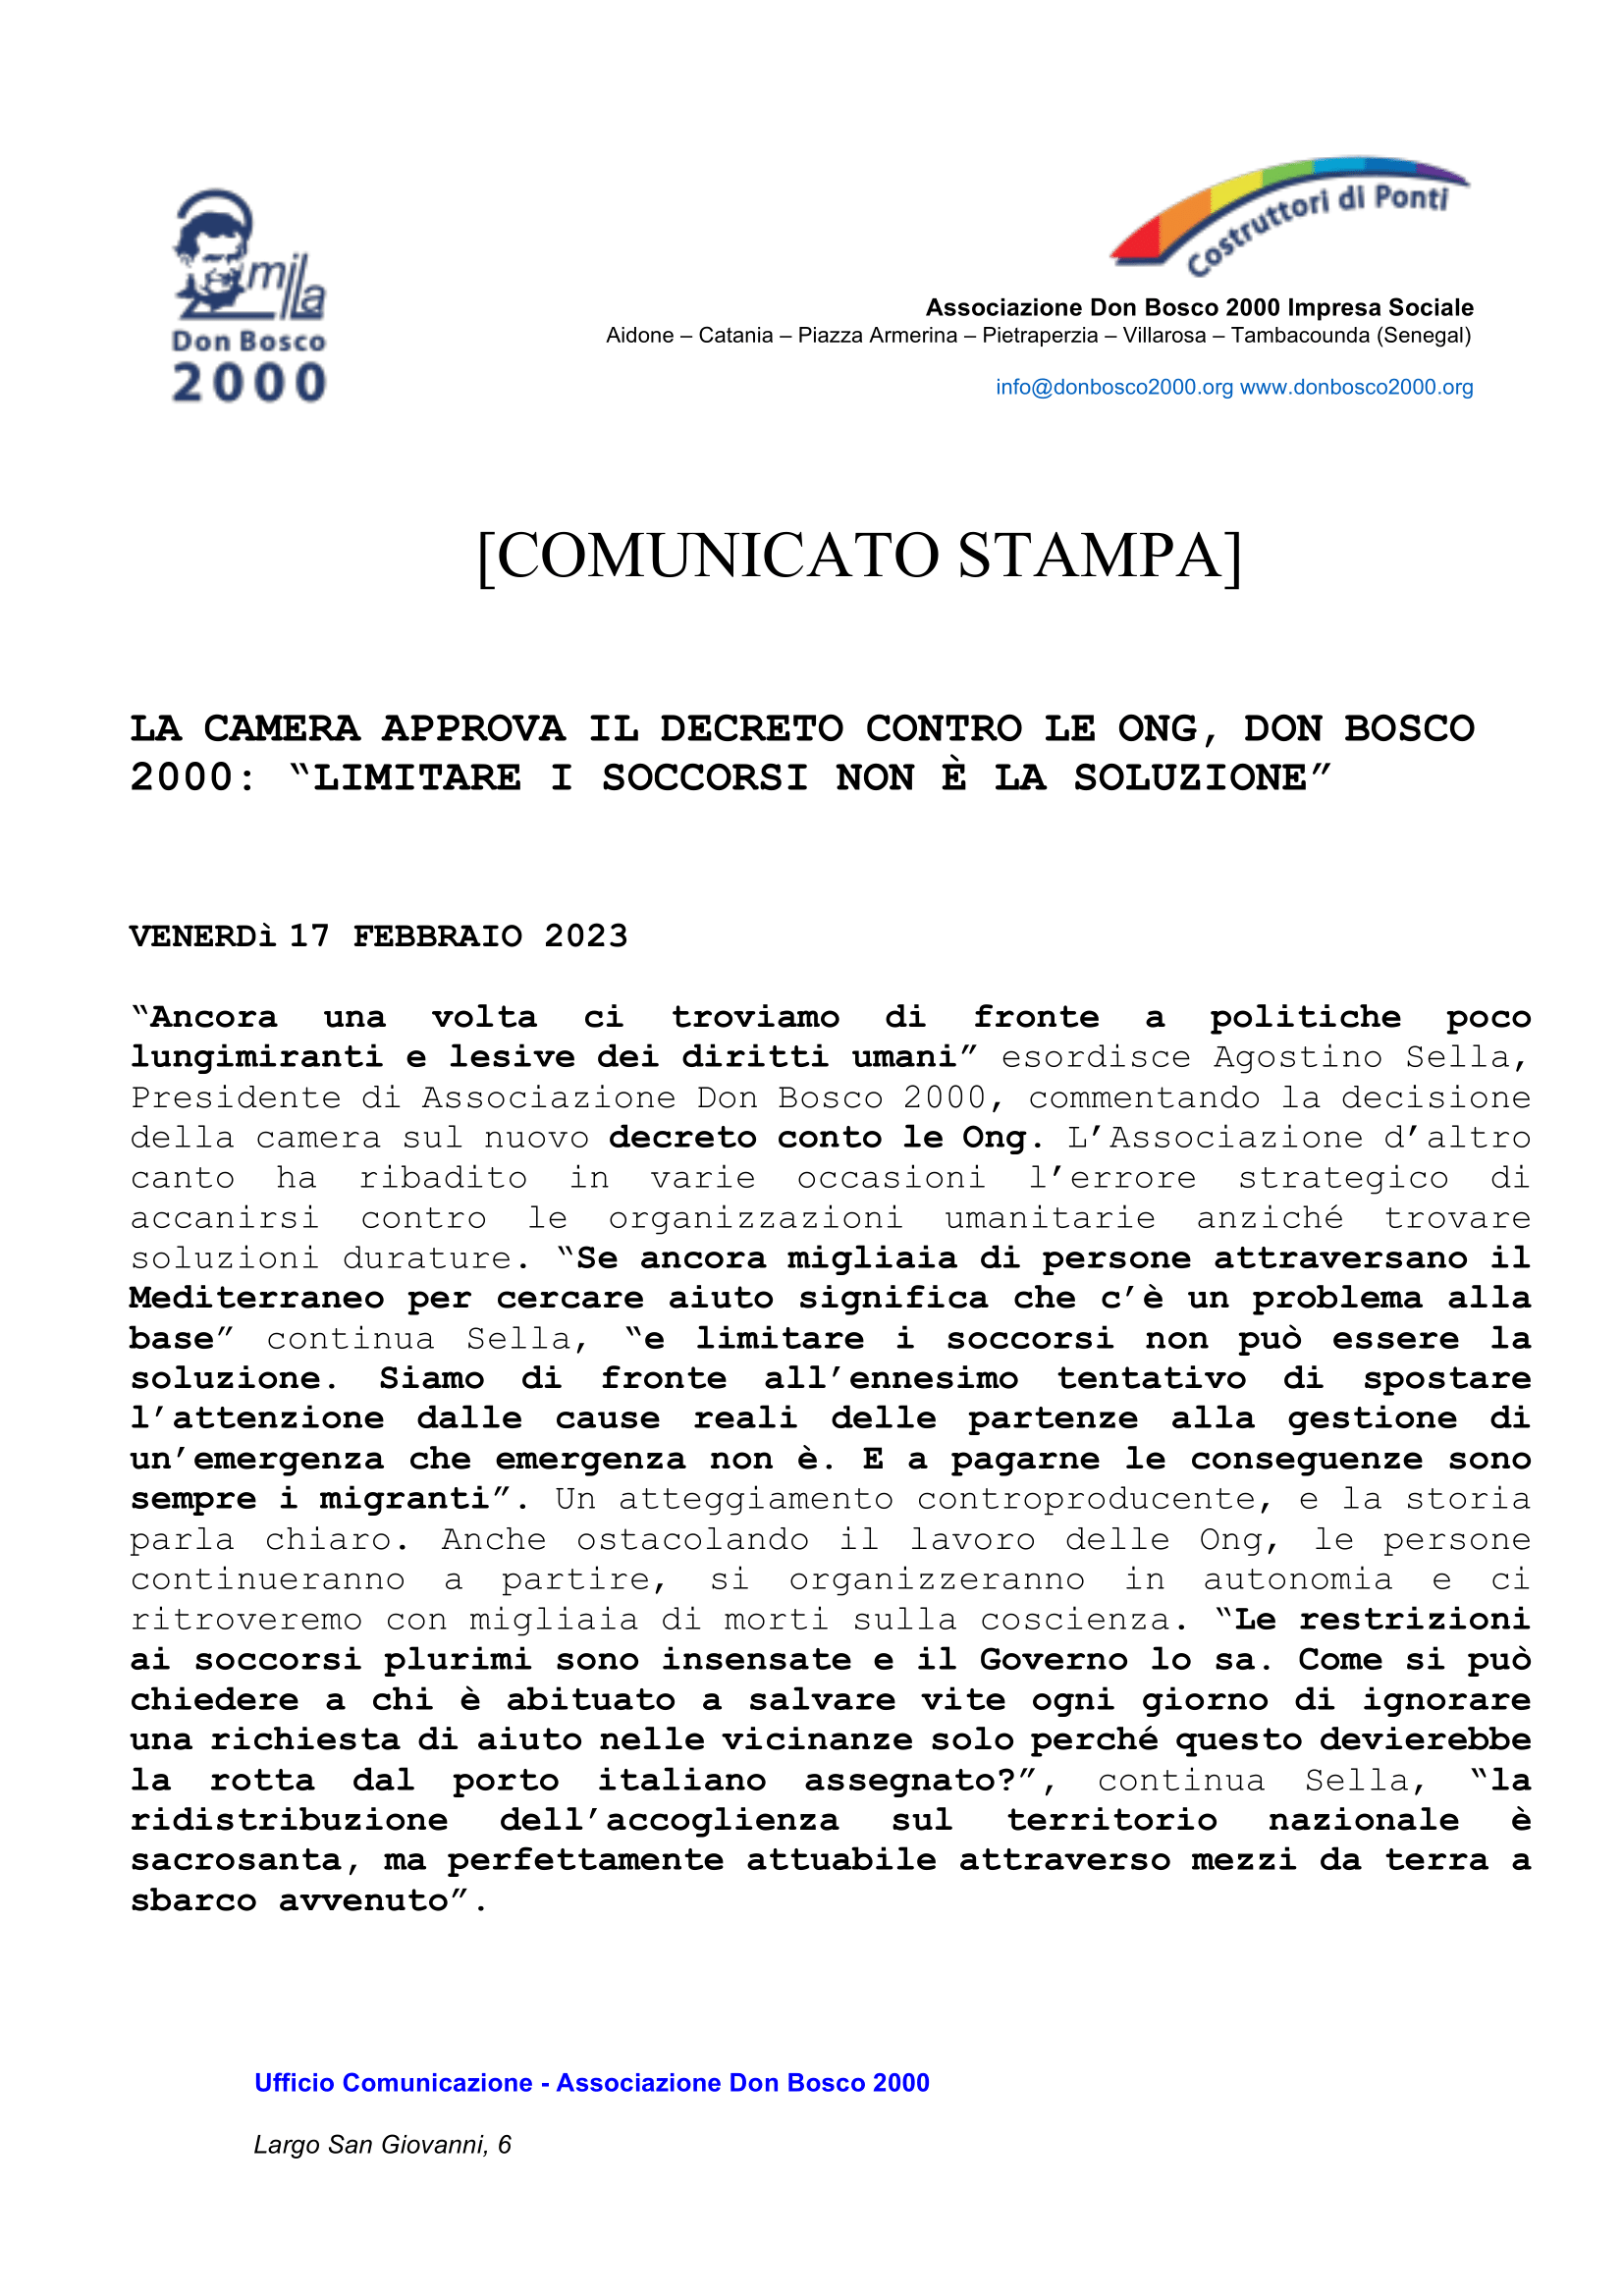 comunicato stampa_db2000 - Dichiarazione decreto contro Ong-1